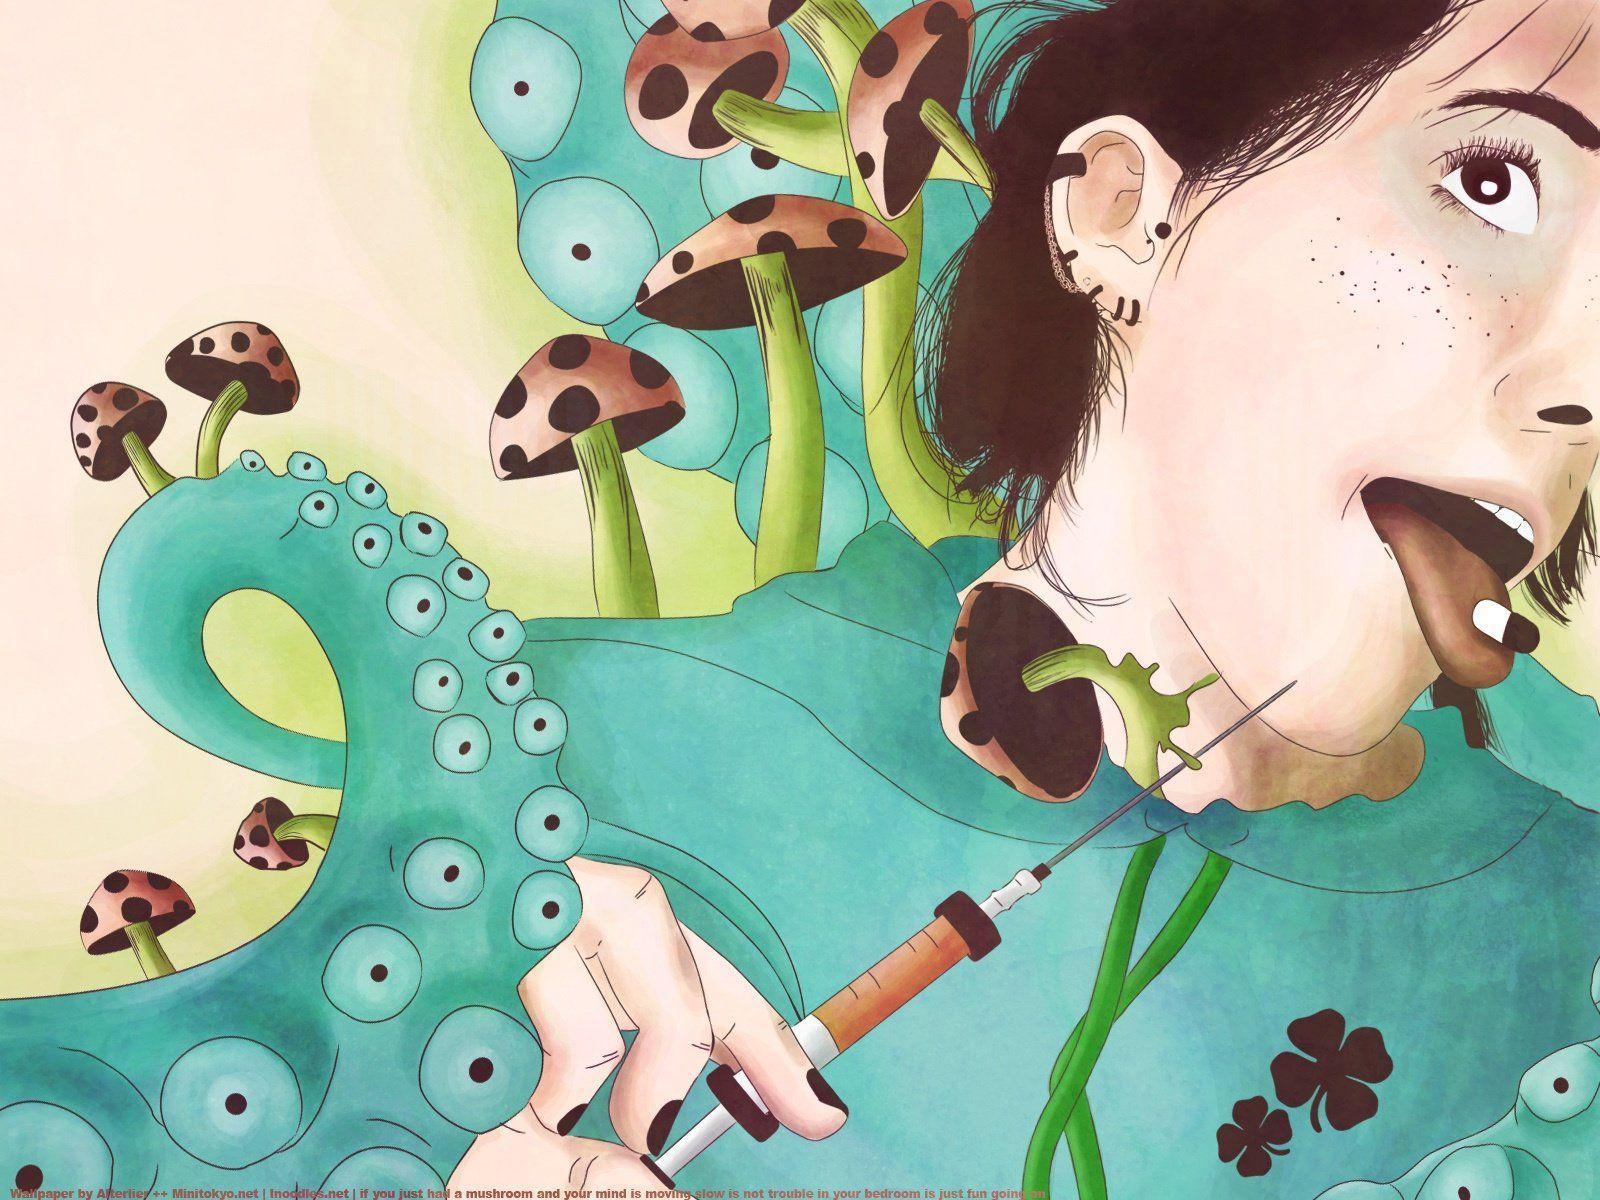 Injection Digital Art Drugs Mushrooms Pills Wallpaper